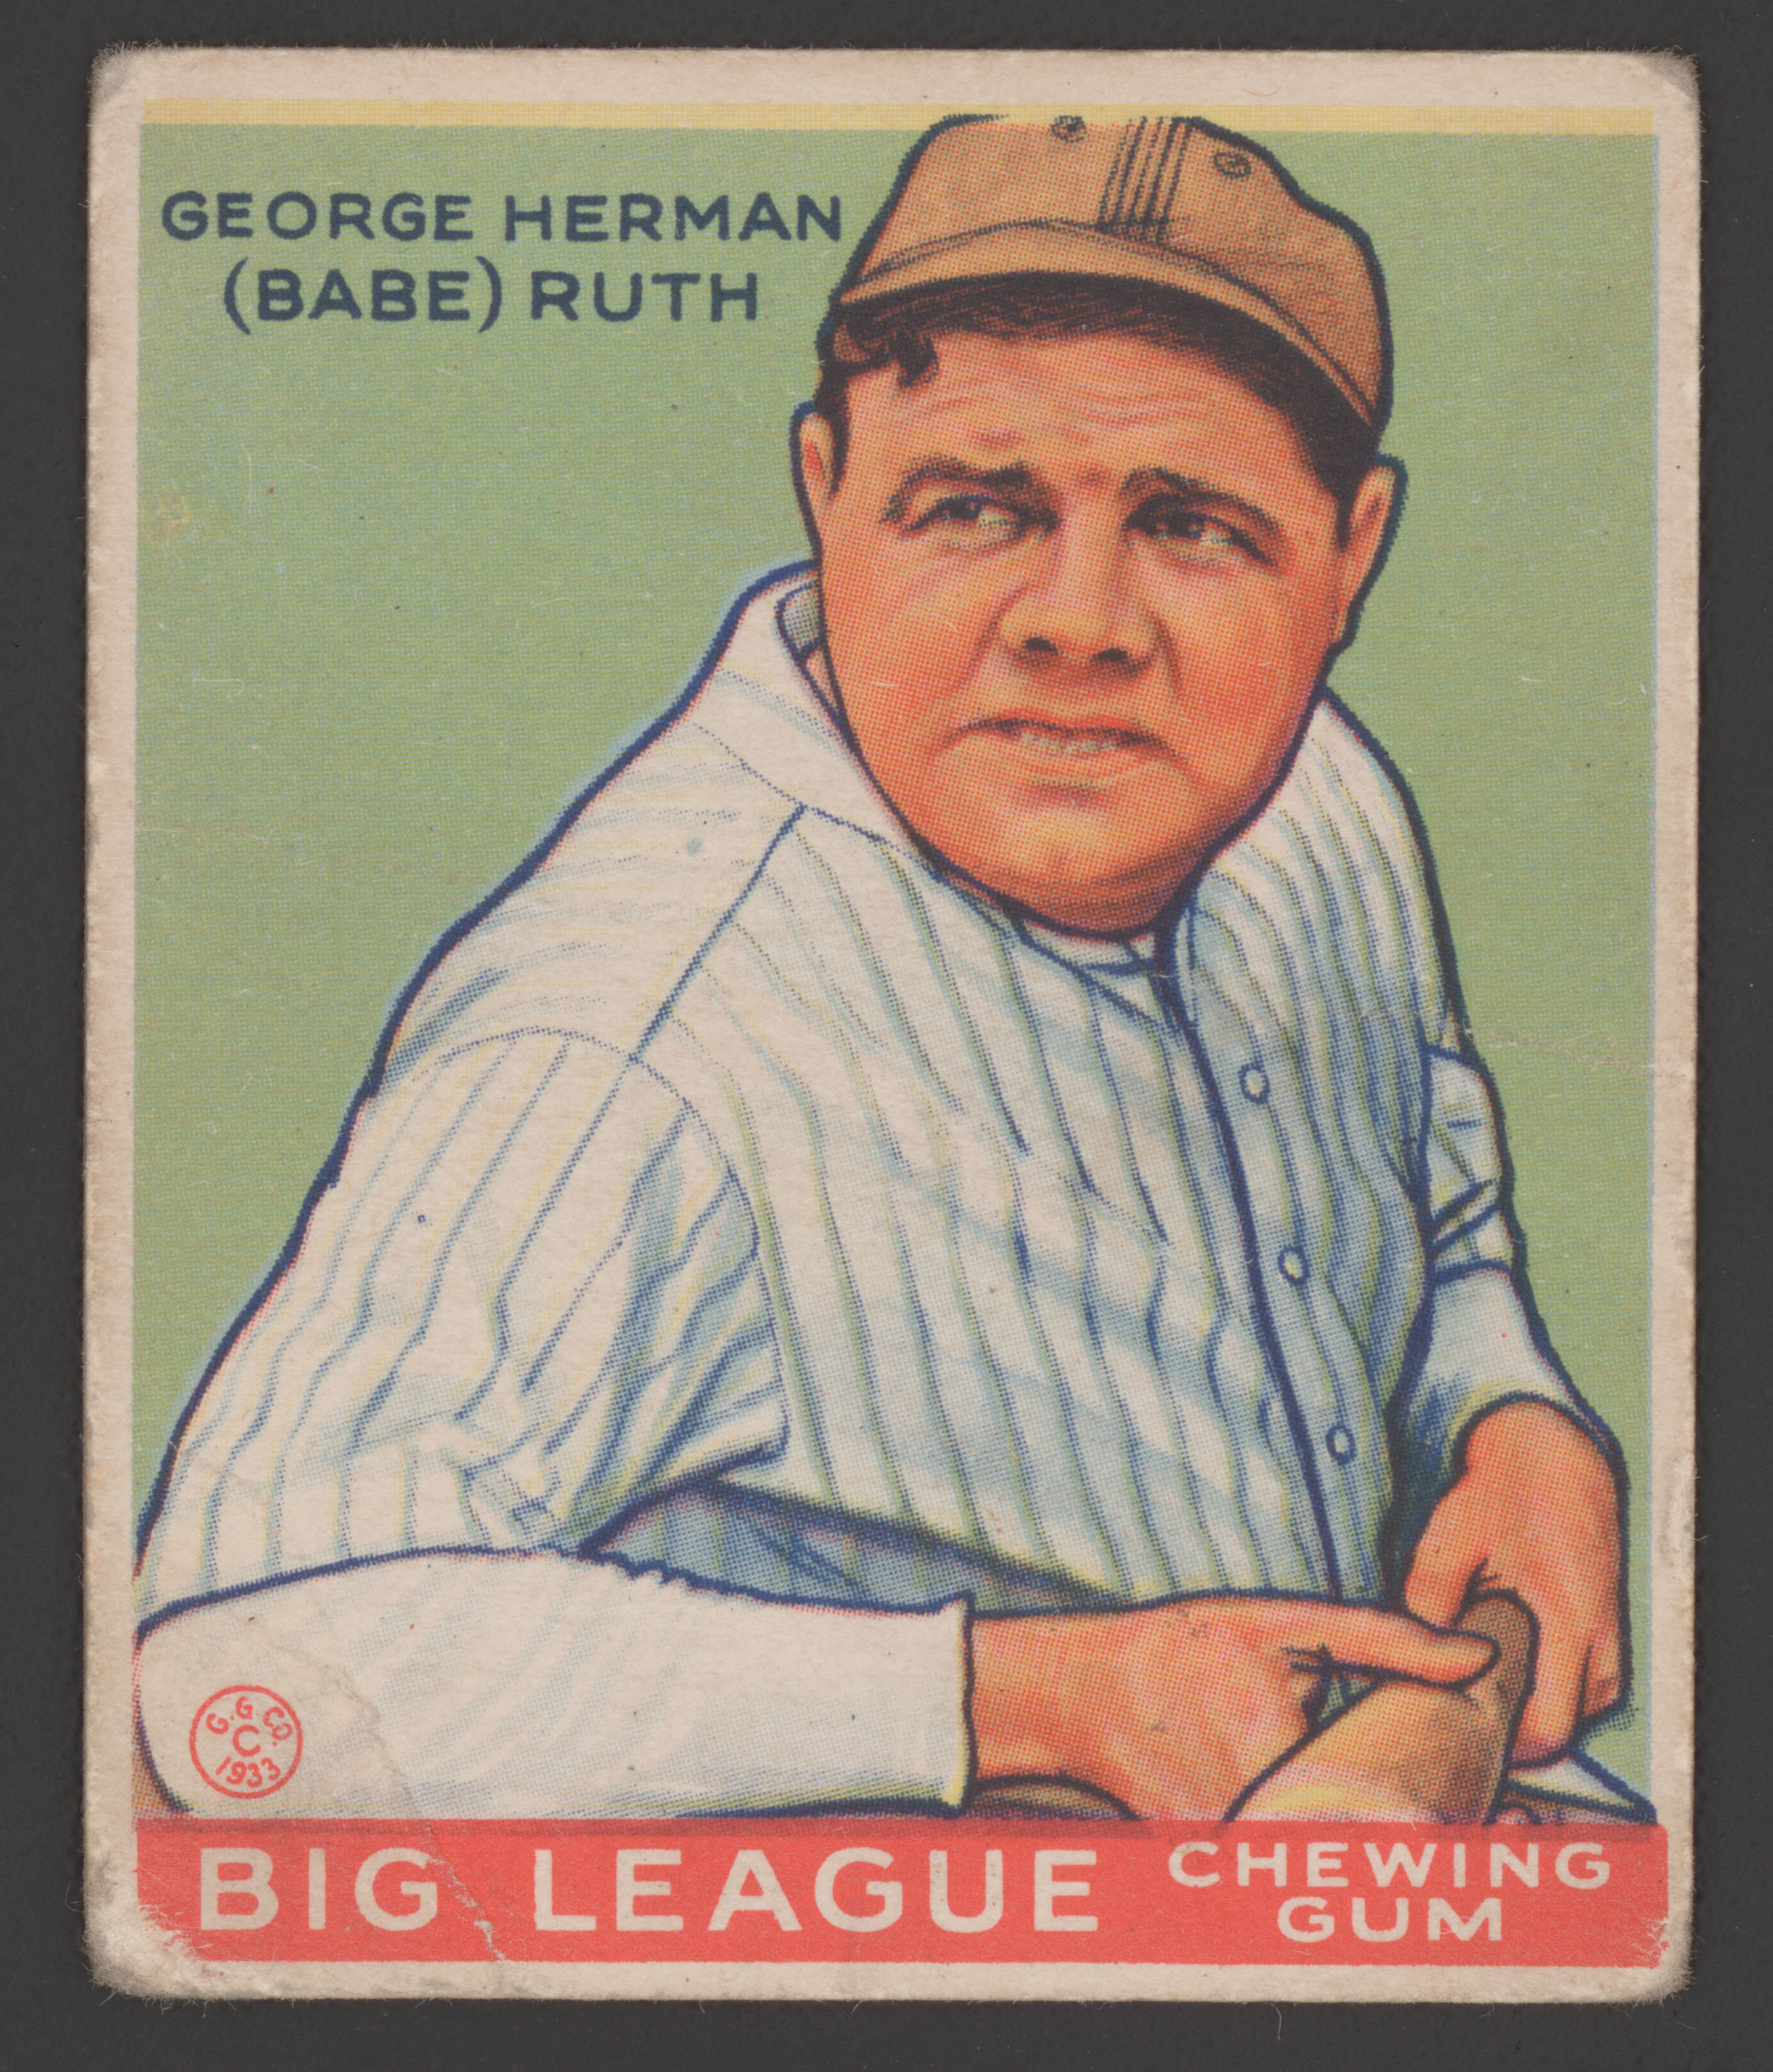 Babe Ruth baseball card circa 1933.